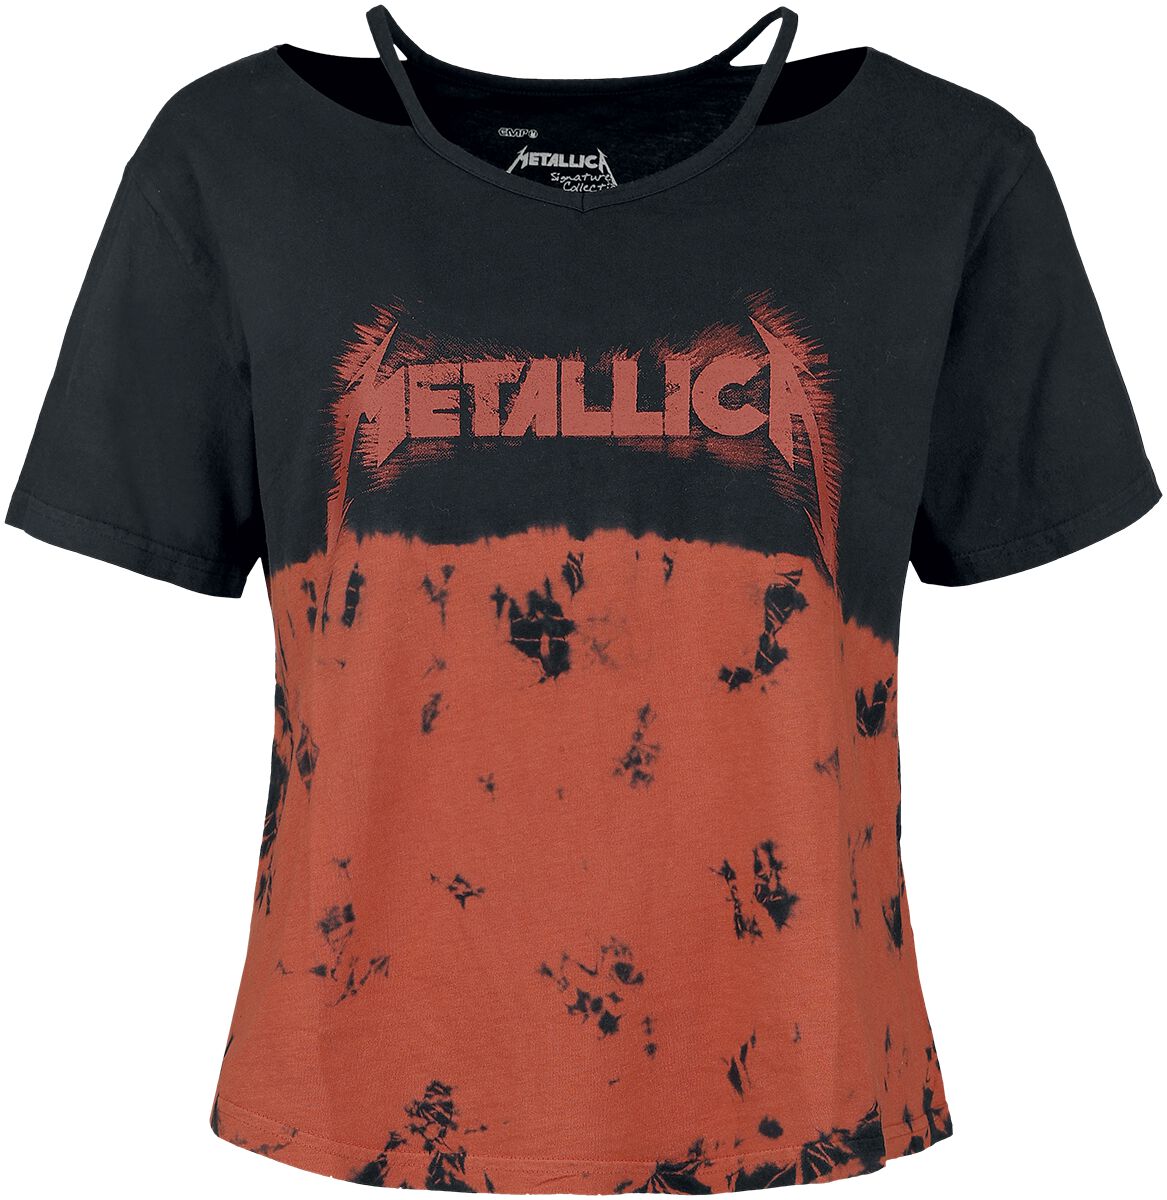 T-Shirt Manches courtes de Metallica - EMP Signature Collection - S à XXL - pour Femme - noir/rouge